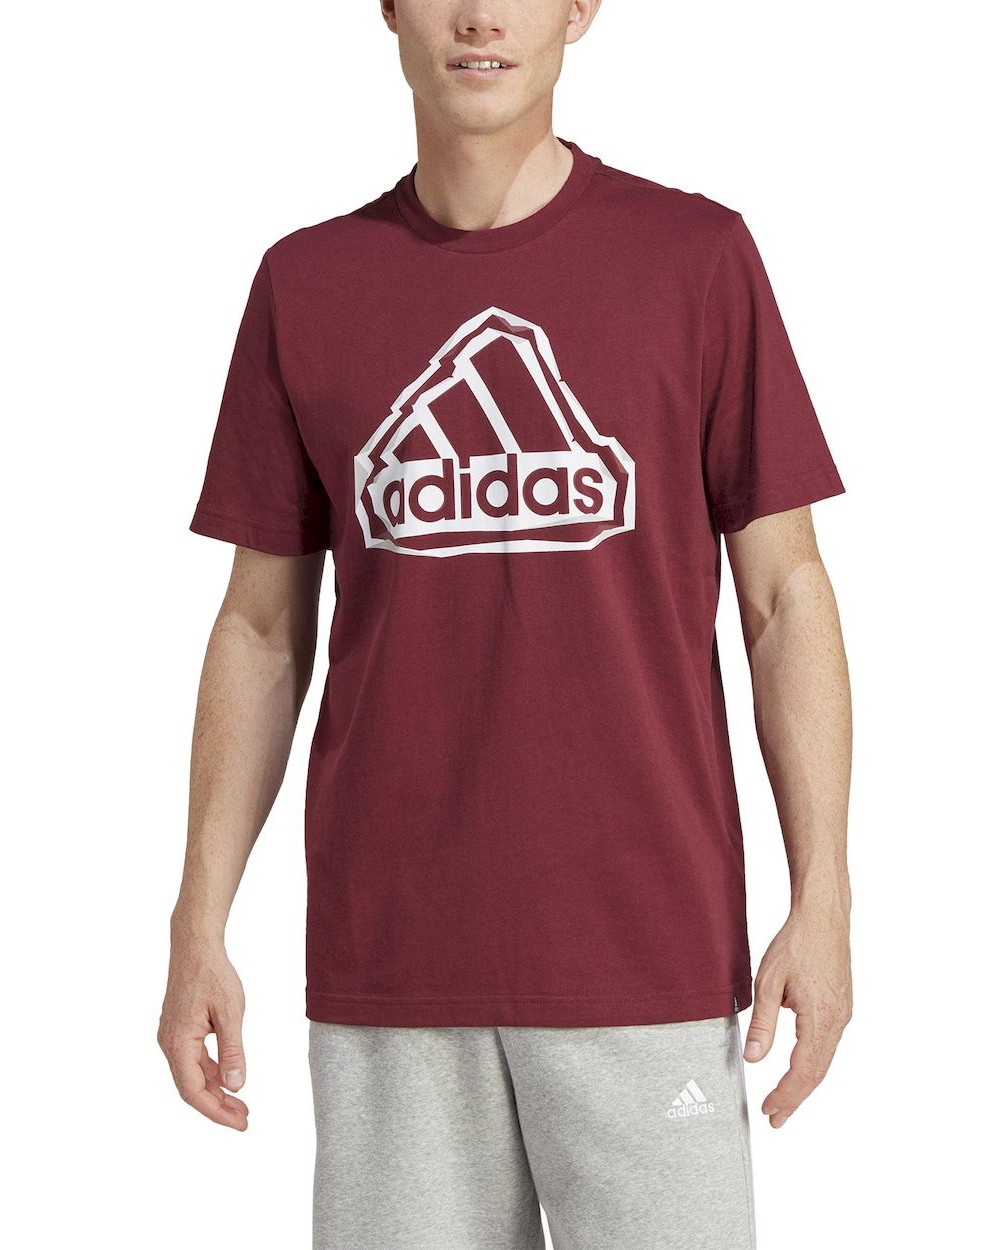  T-shirt maglia maglietta UOMO Adidas Rosso FLD BOS LOGO Cotone jersey